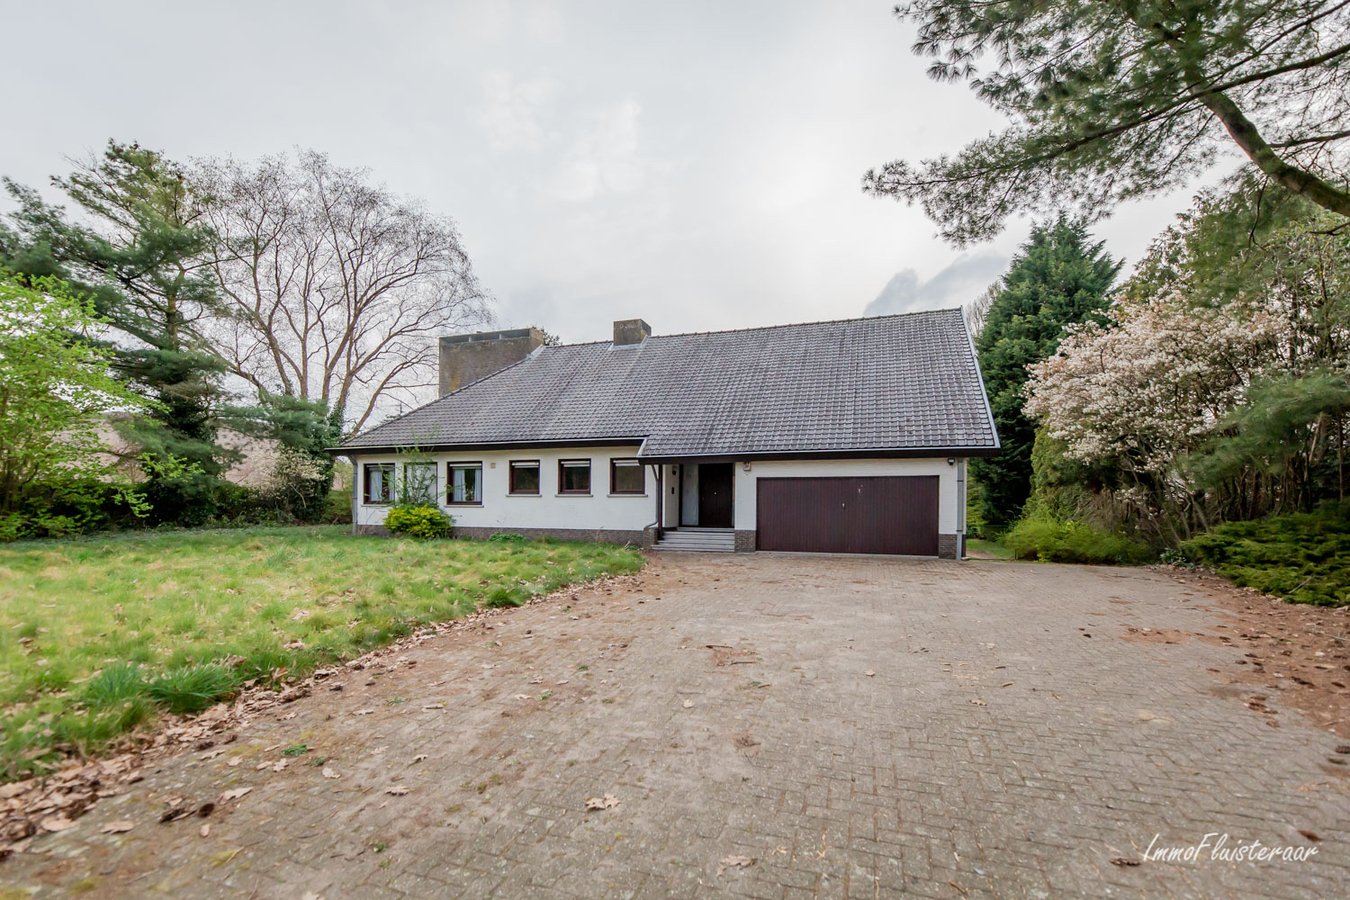 Property sold in Baarle-Hertog